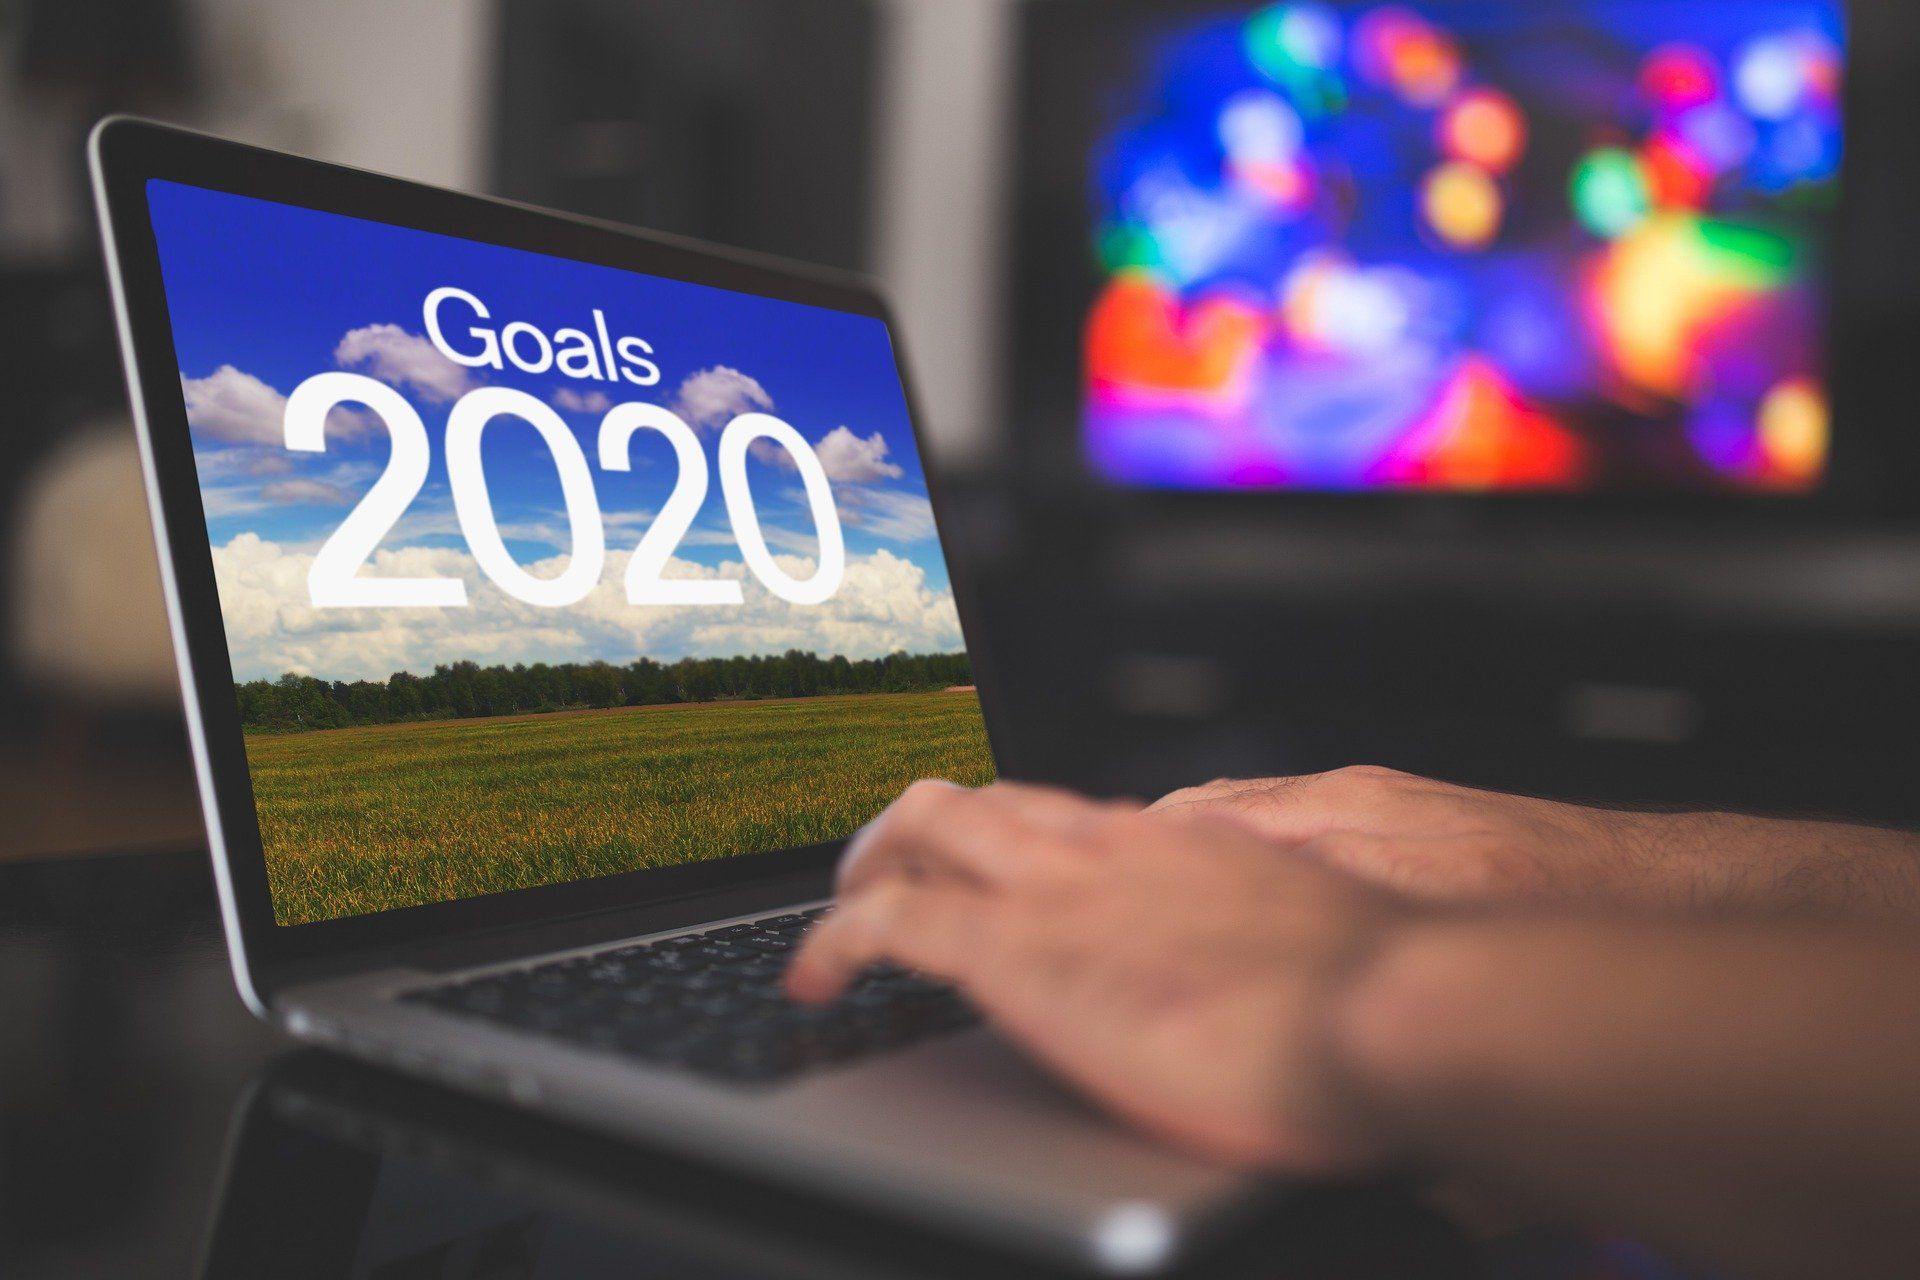 goals 2020 on laptop screen